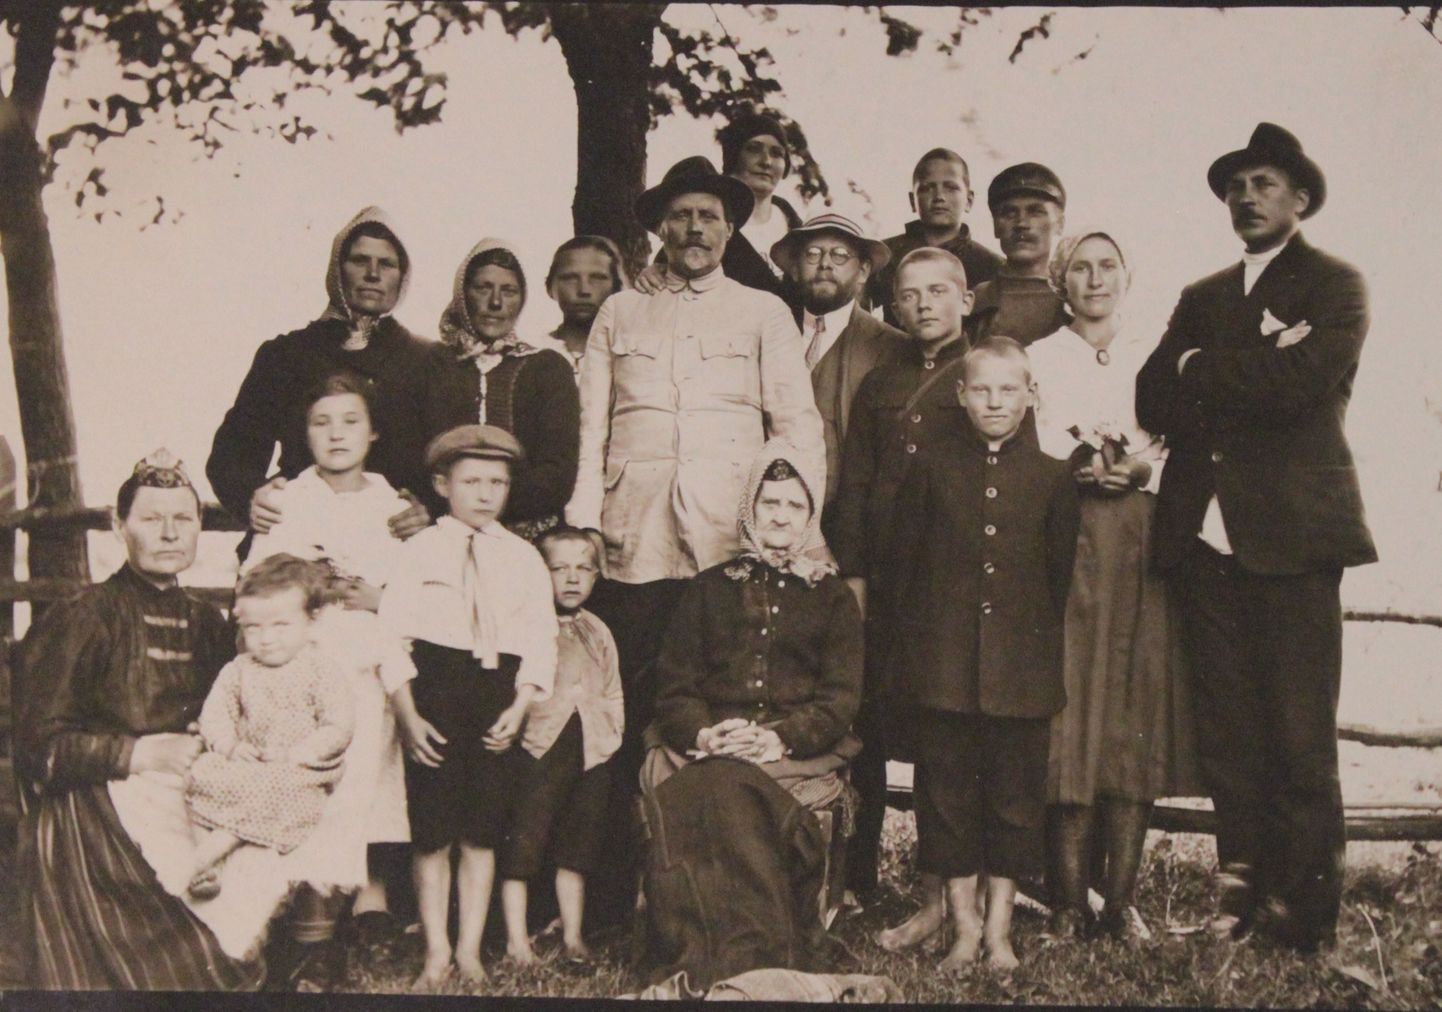 GEORG VILTO (1892–1964; seisab paremal), Muhu kooliõpetaja ja ühiskonnategelane koos oma sugulastega: koolitegelase ja tsensori Timotheus Kuusikuga (1863–1940; keskel) tema kõrval poeg Aleksis Kuusik (1886–1956), kes oli Tallinna Gustav Adolfi gümnaasiumi direktor kogu Teise maailmasõja eelse aja ja ka pärast sõda. Ees keskel istub Timotheuse ema Kadri Kuusik (s Kipper 1937–1929), kes oli Muhus tuntud pulmalaulik ja kelle laulud poeg Eesti rahvaluule arhiivi jaoks üles kirjutas.